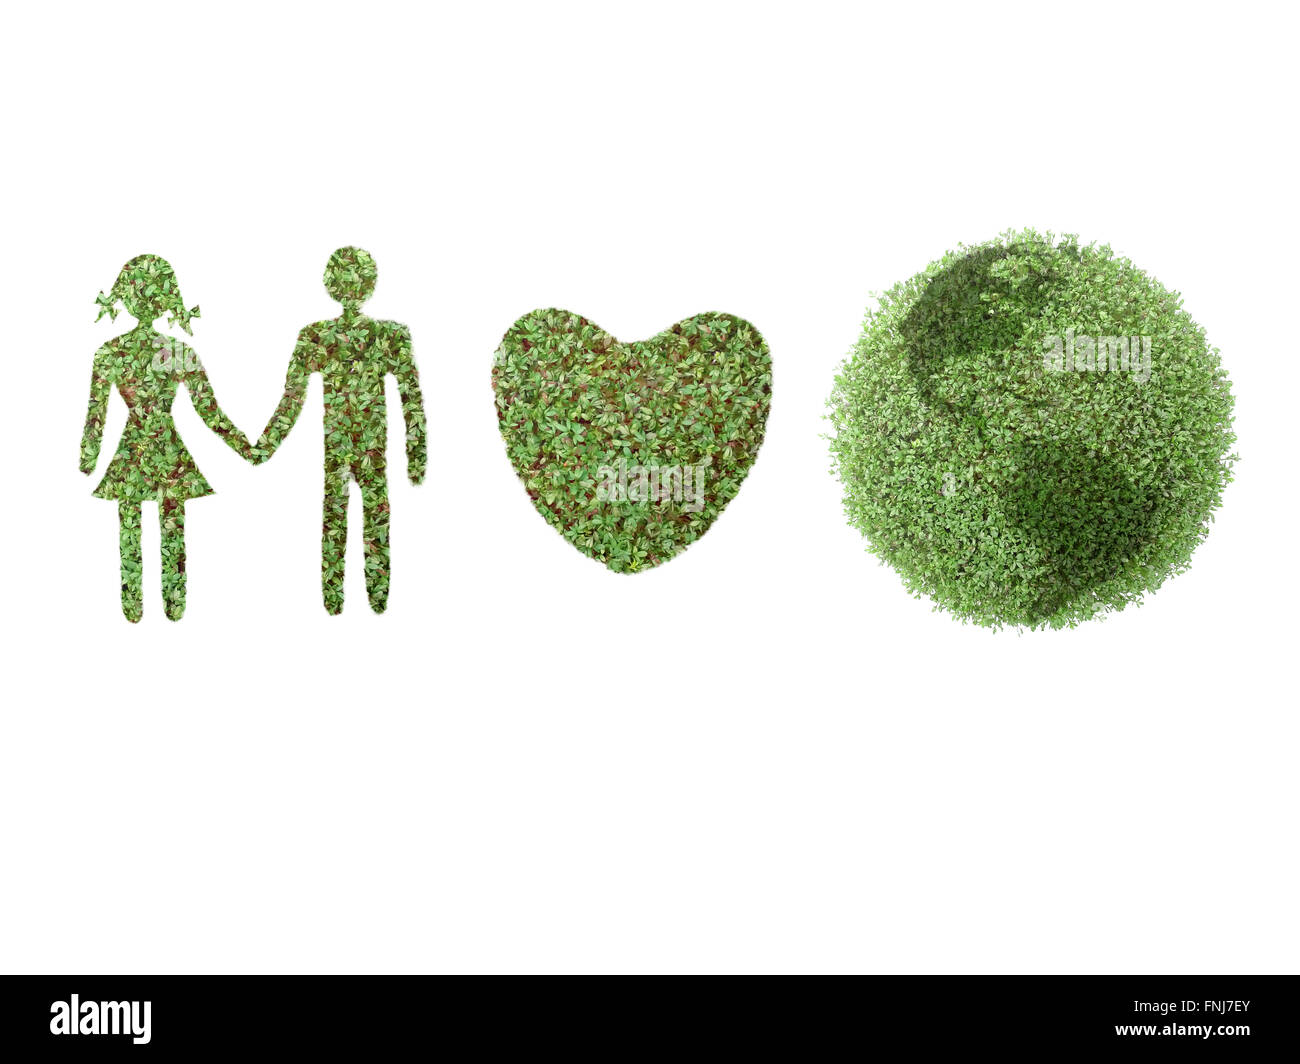 Icone verdi di sesso maschile e femminile, il cuore e il globo terrestre su bianco Foto Stock